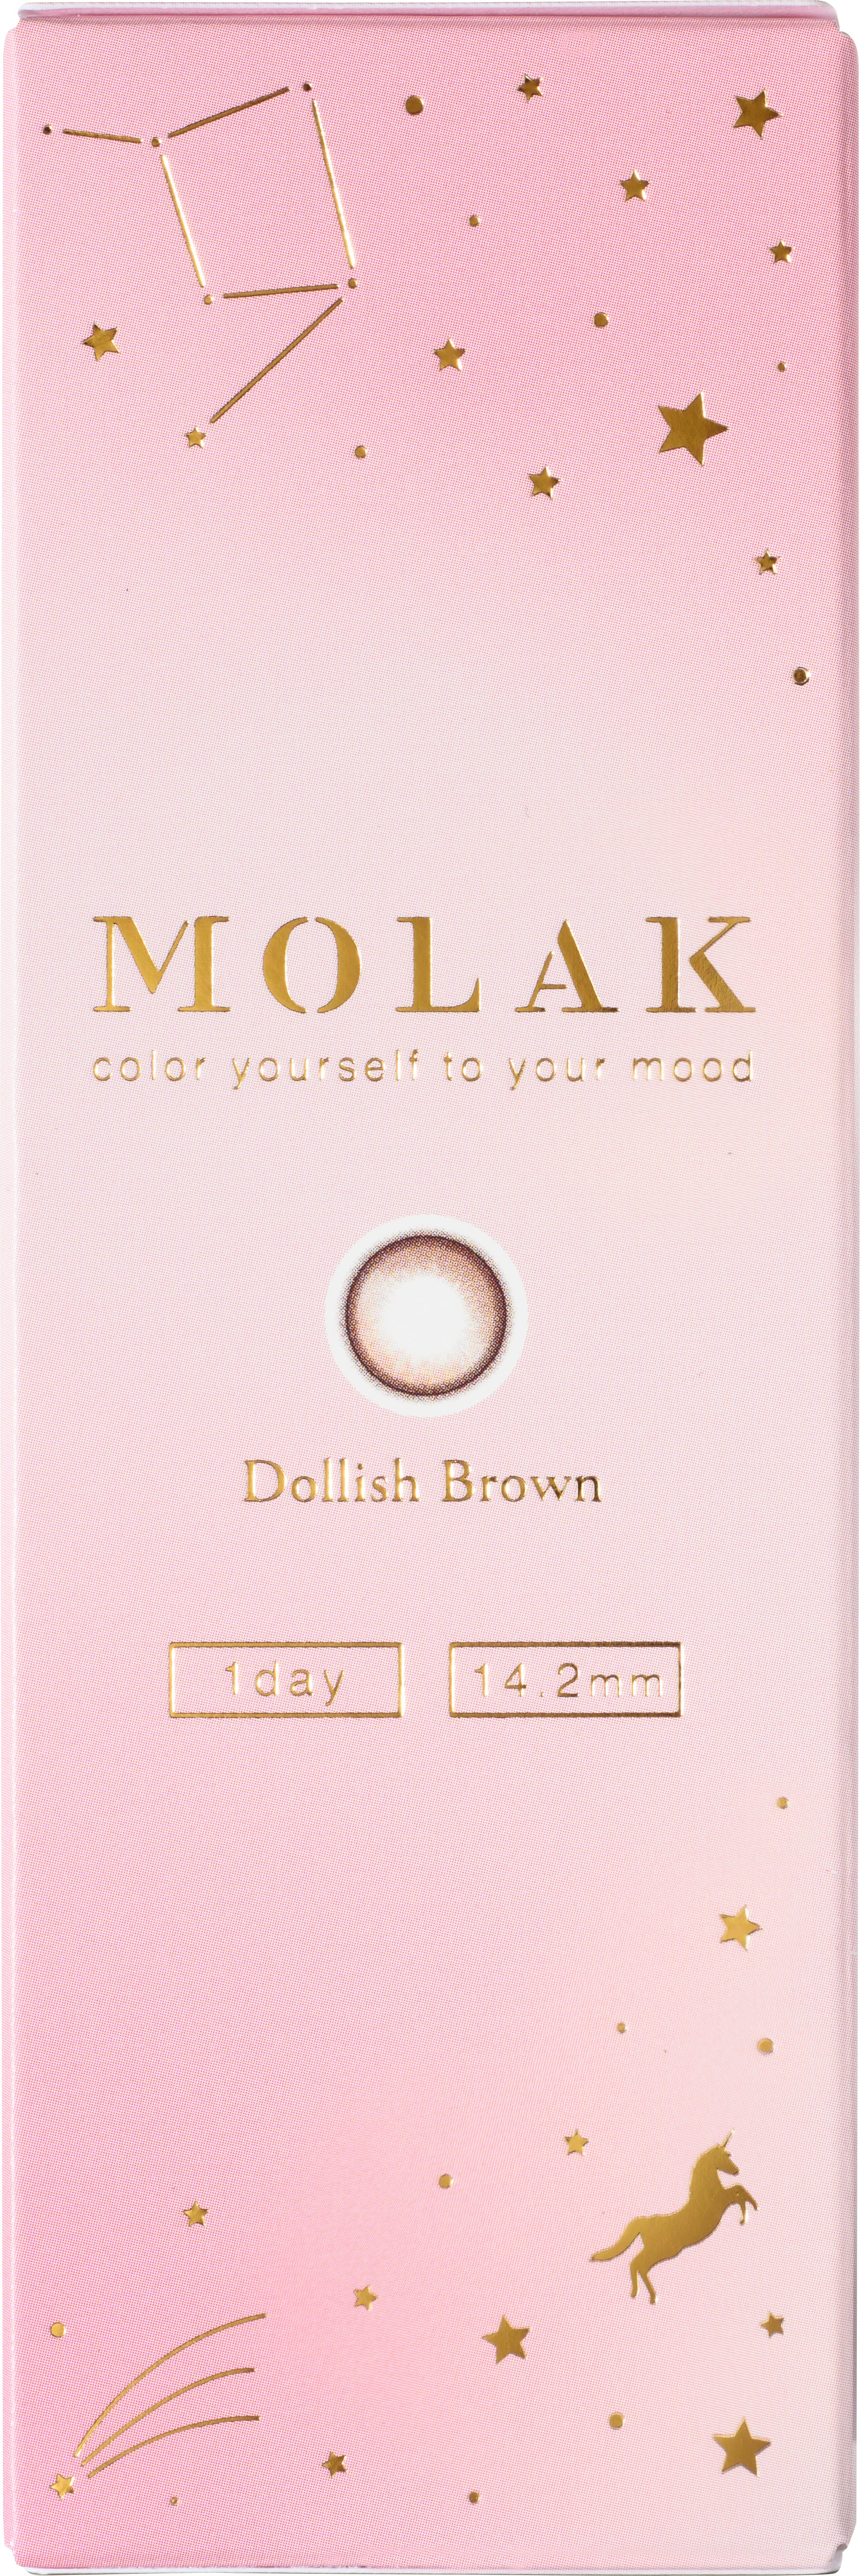 Dollish Brown | 1day